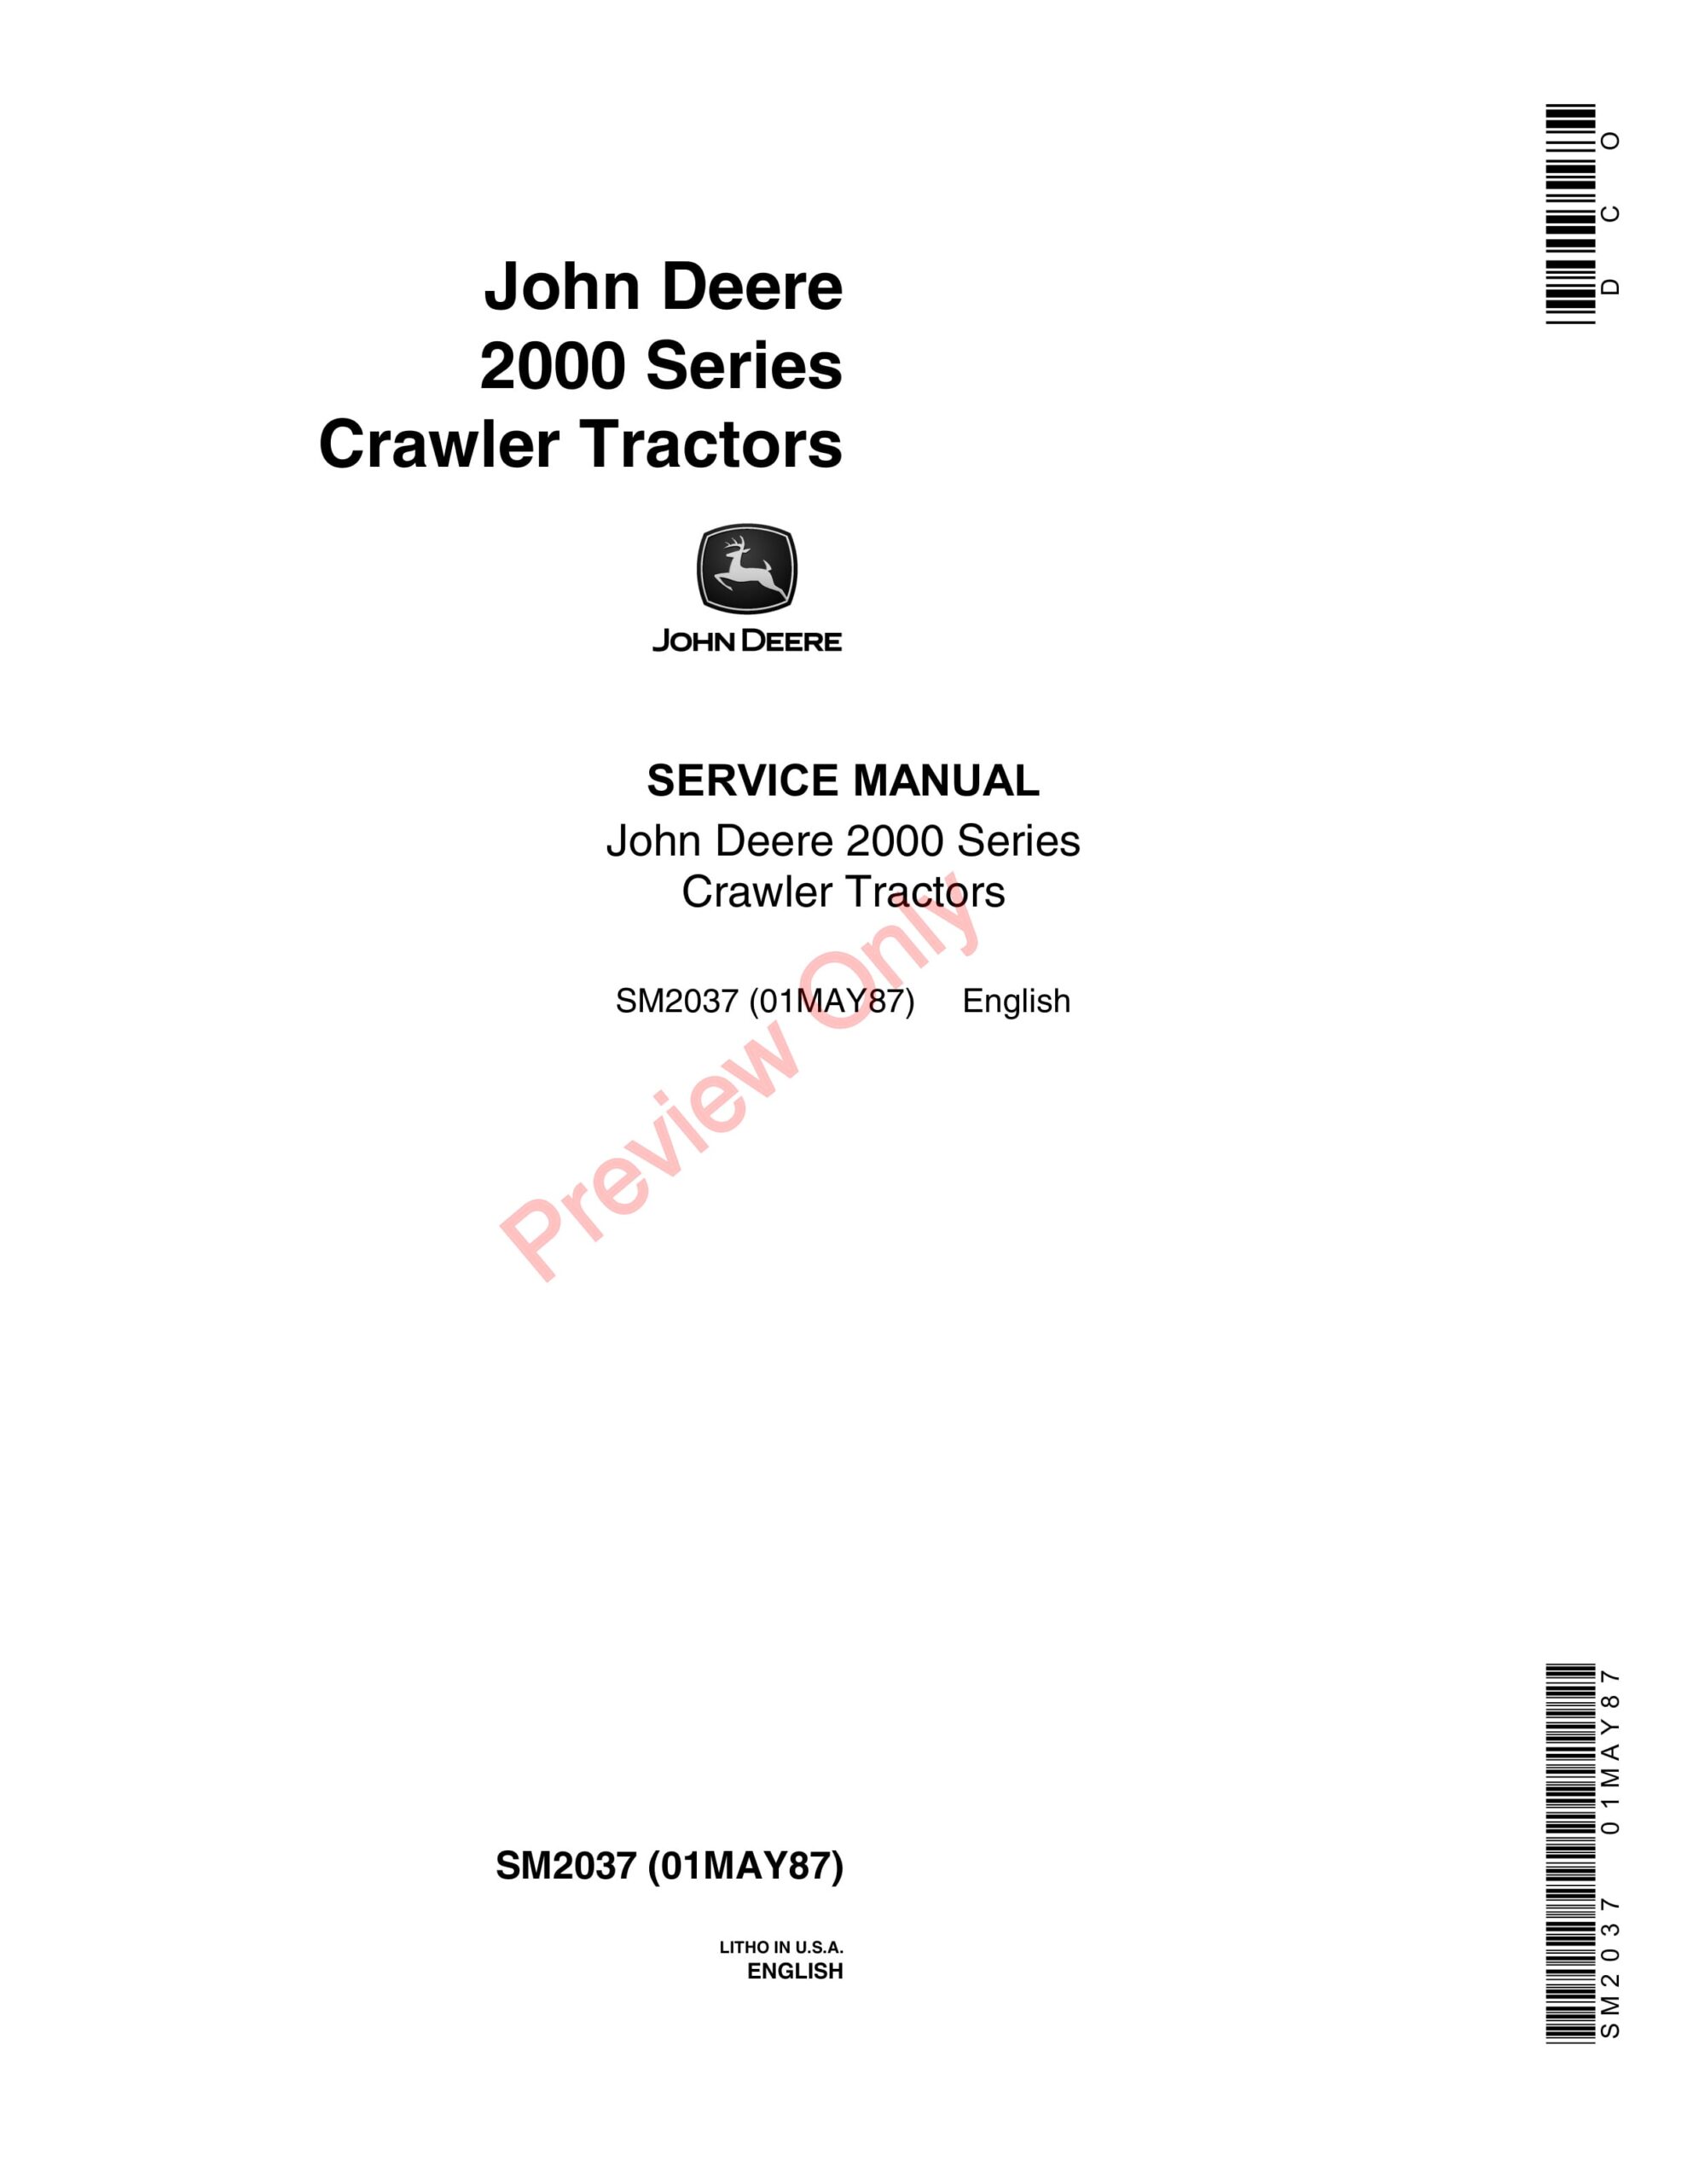 John Deere 2000 Series Crawler Tractors Service Manual SM2037 01MAY87-1